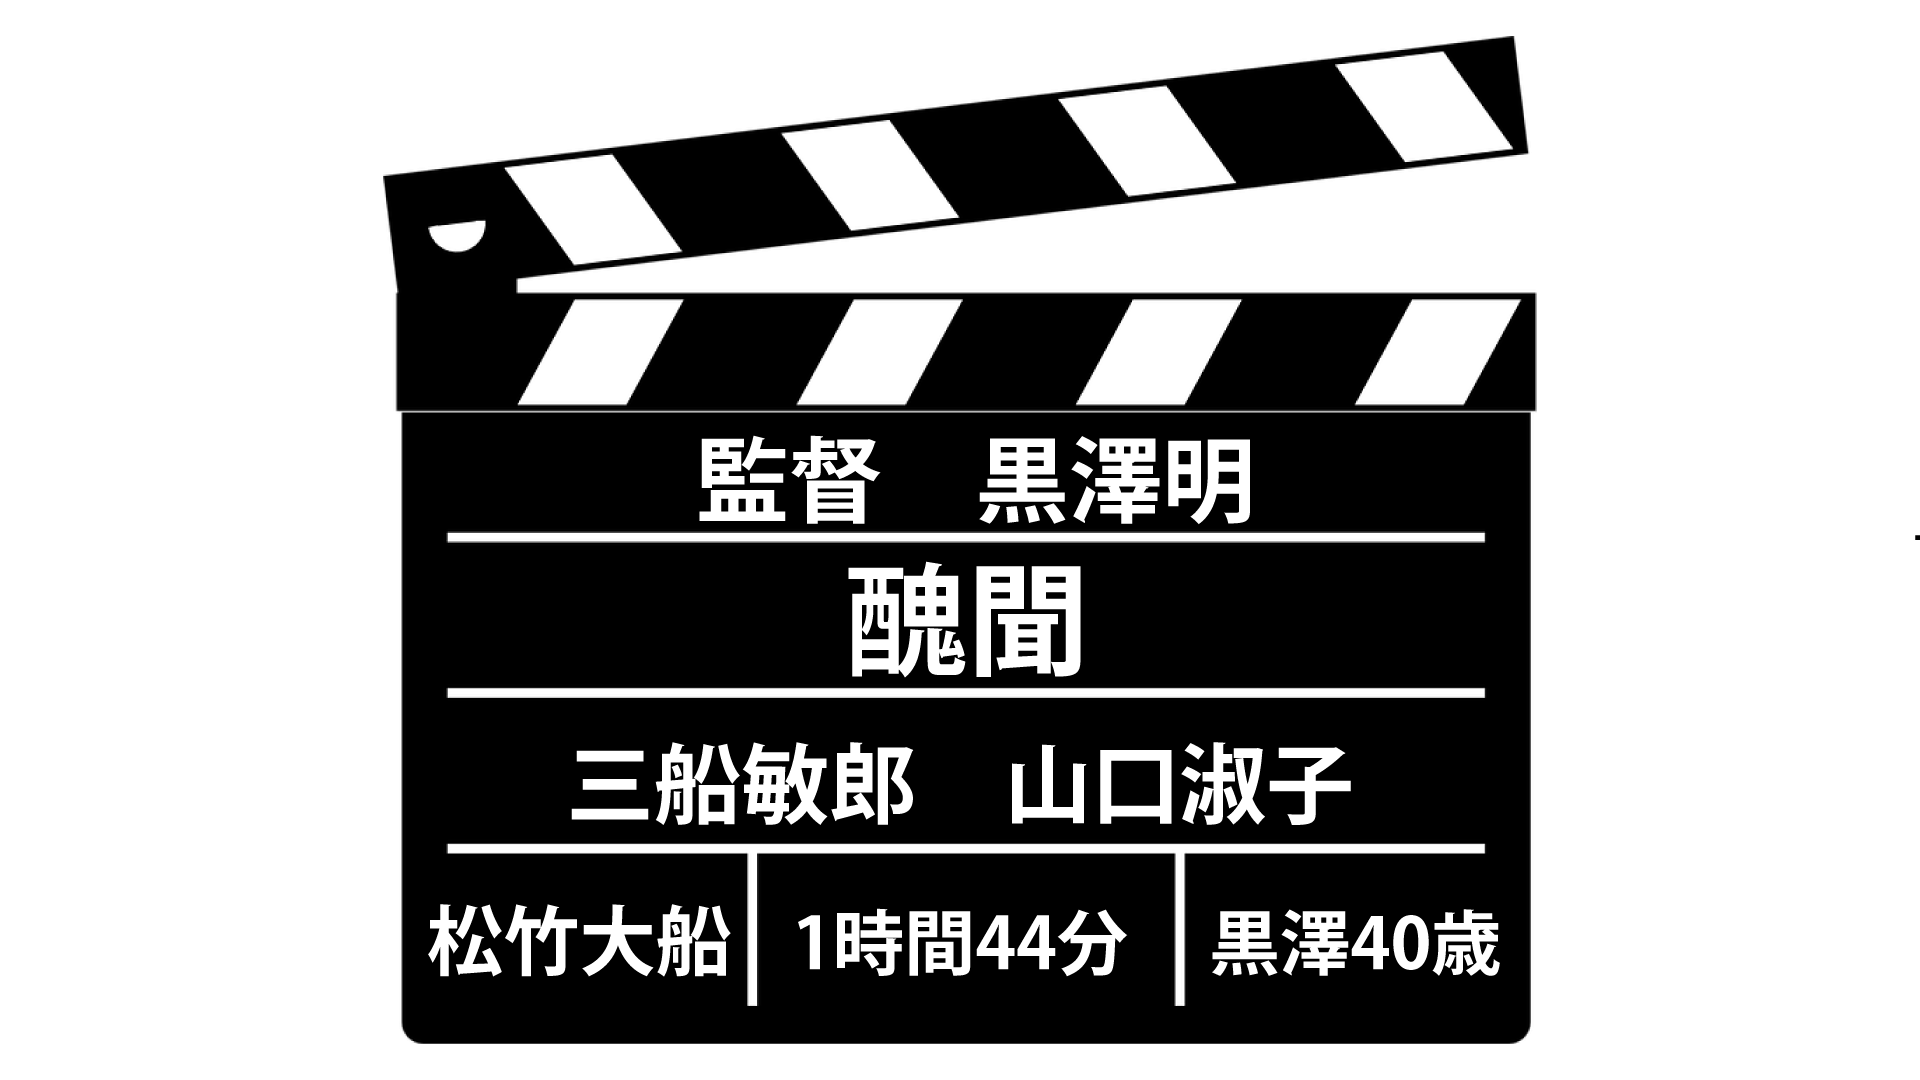 黒澤明×三船敏郎「醜聞(スキャンダル)」は、マスコミへの怒りと恐怖 